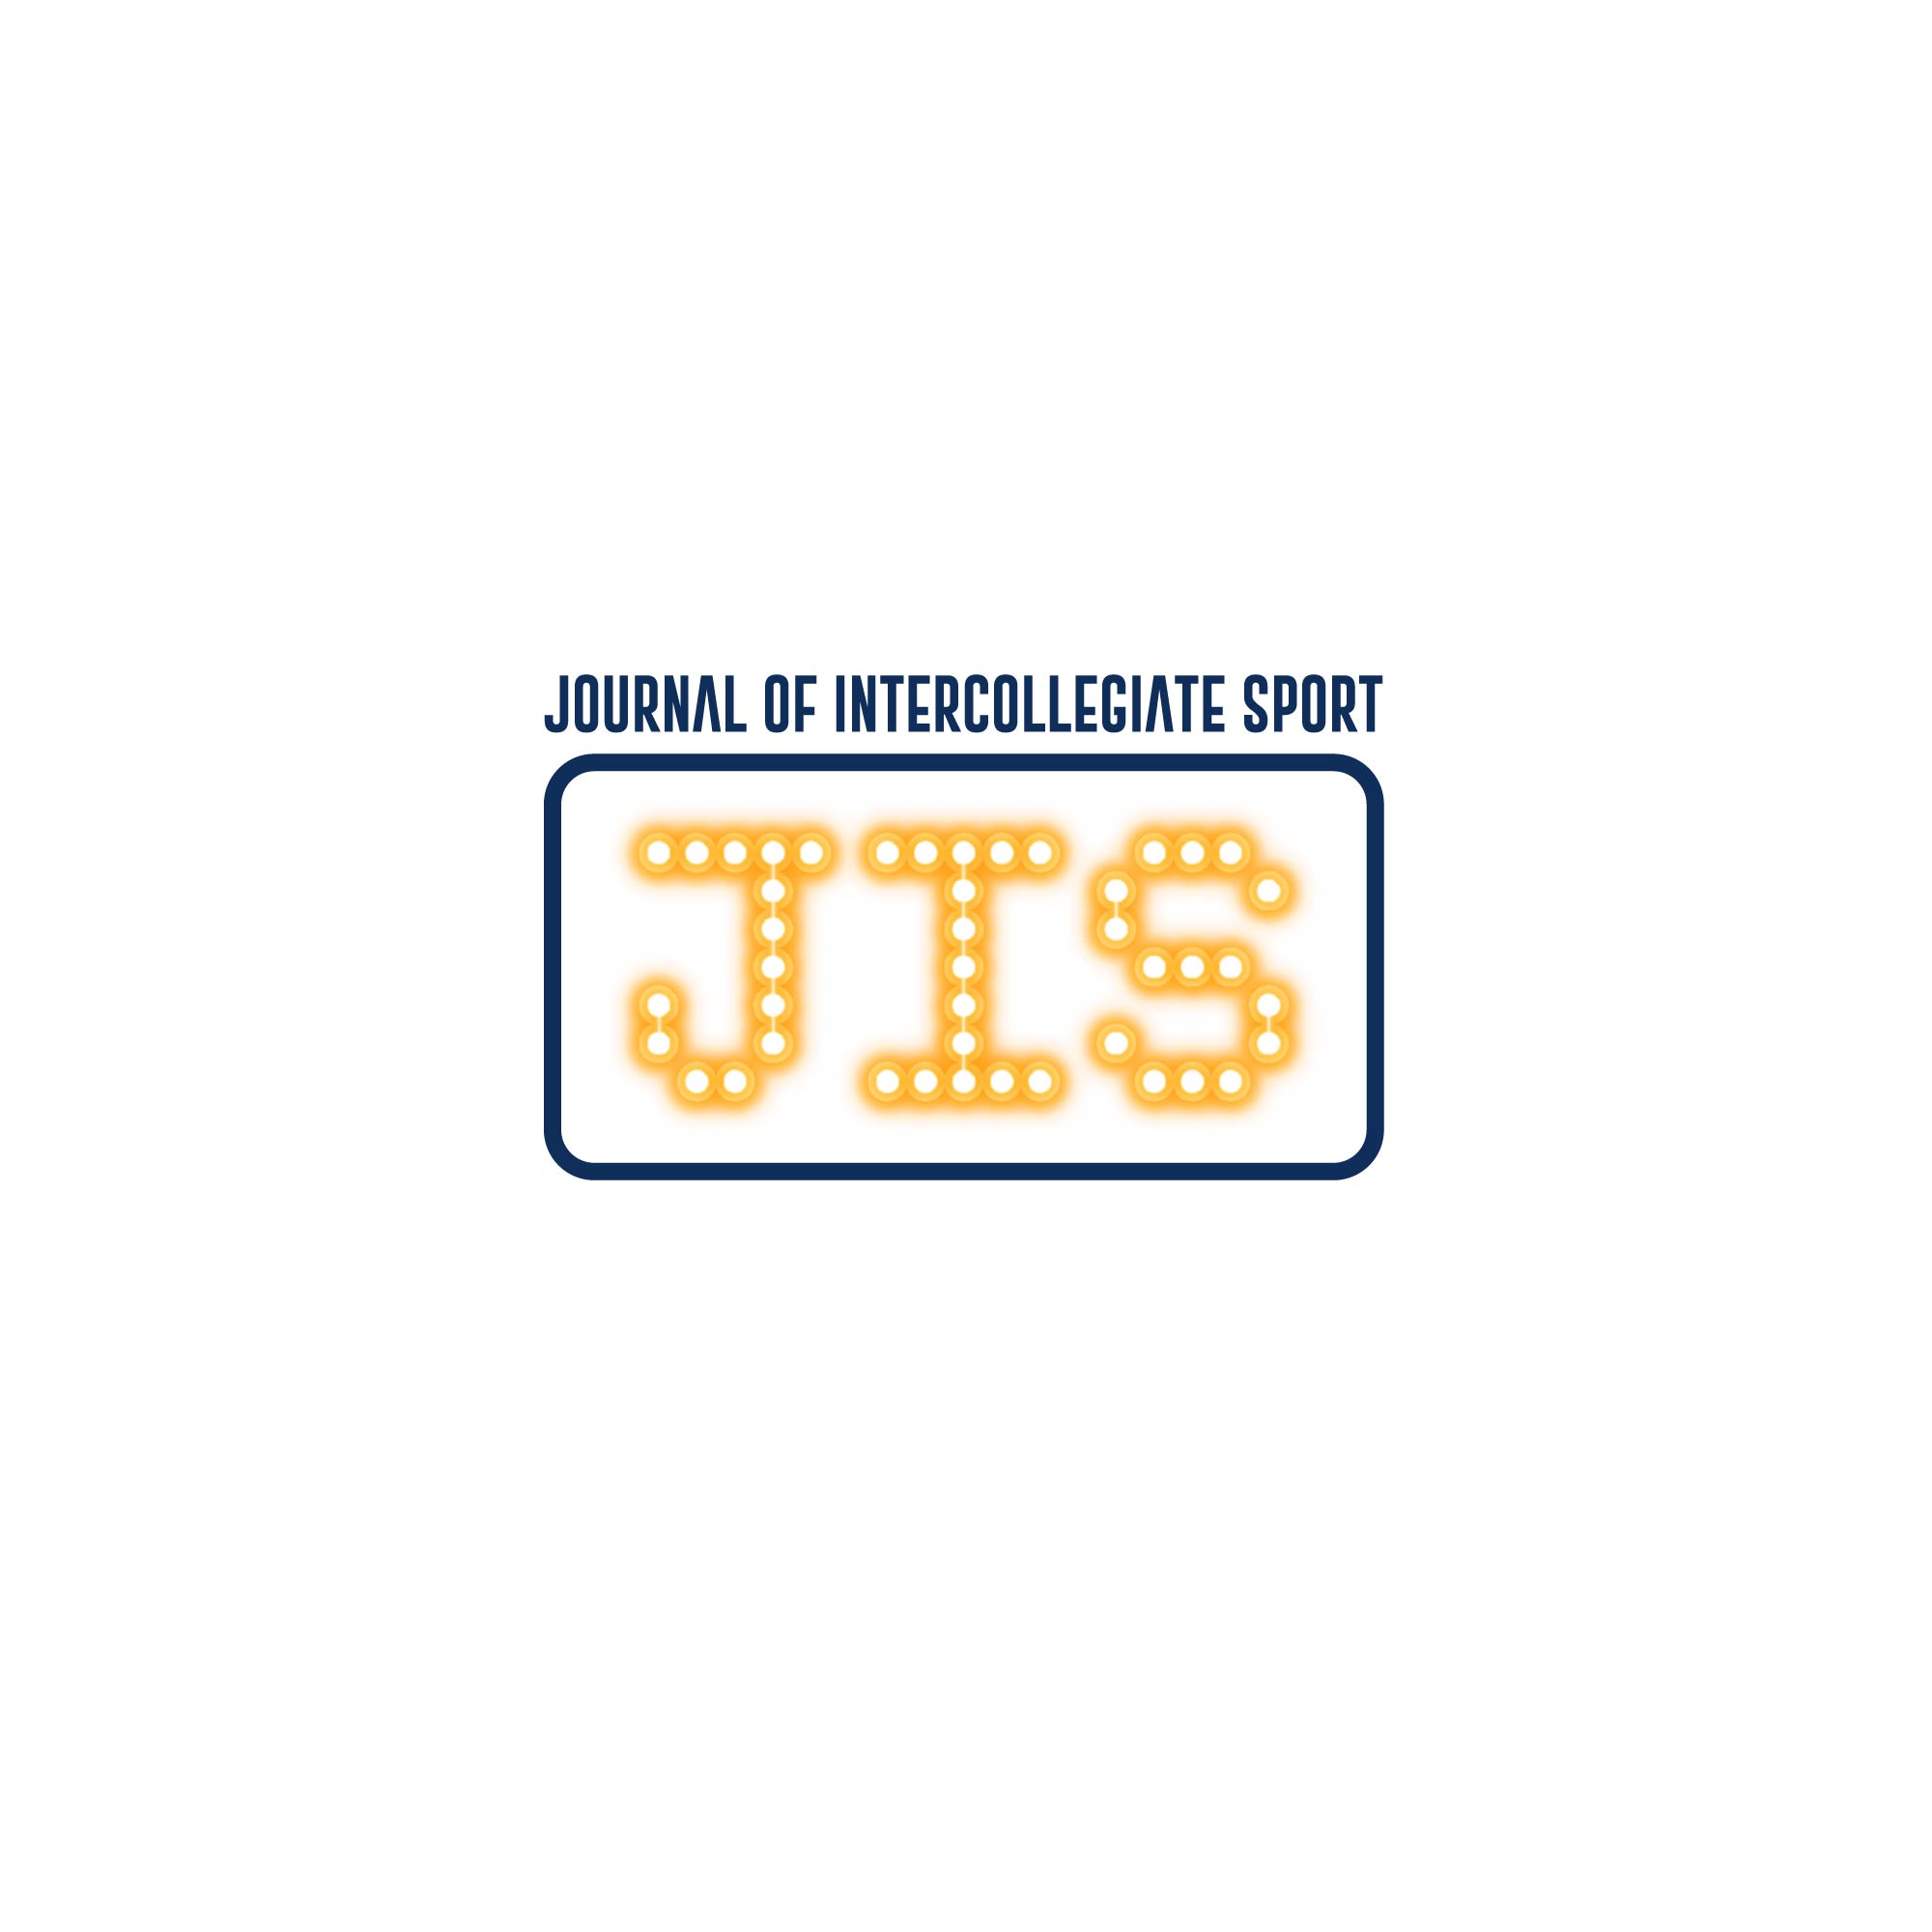 Journal of Intercollegiate Sport - Short Form Logo